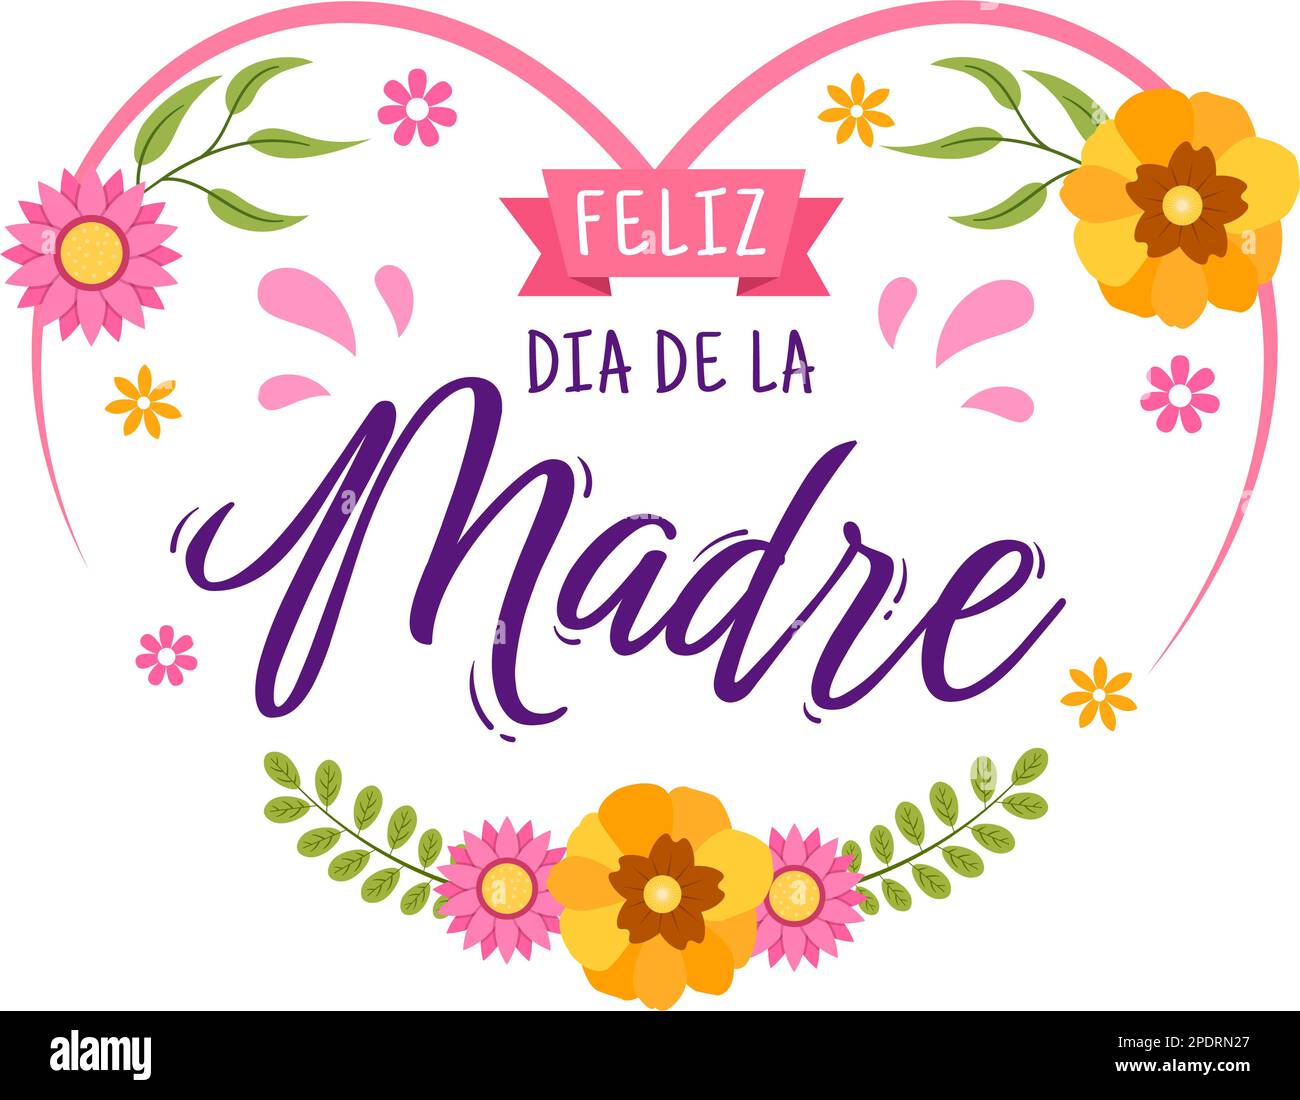 Feliz Día De La Madre Illustration mit Celebrating Happy Mother Day und  Cute Kids in Flat Cartoon Handzeichnet für Webbanner oder  Landing-Page-Vorlagen Stock-Vektorgrafik - Alamy